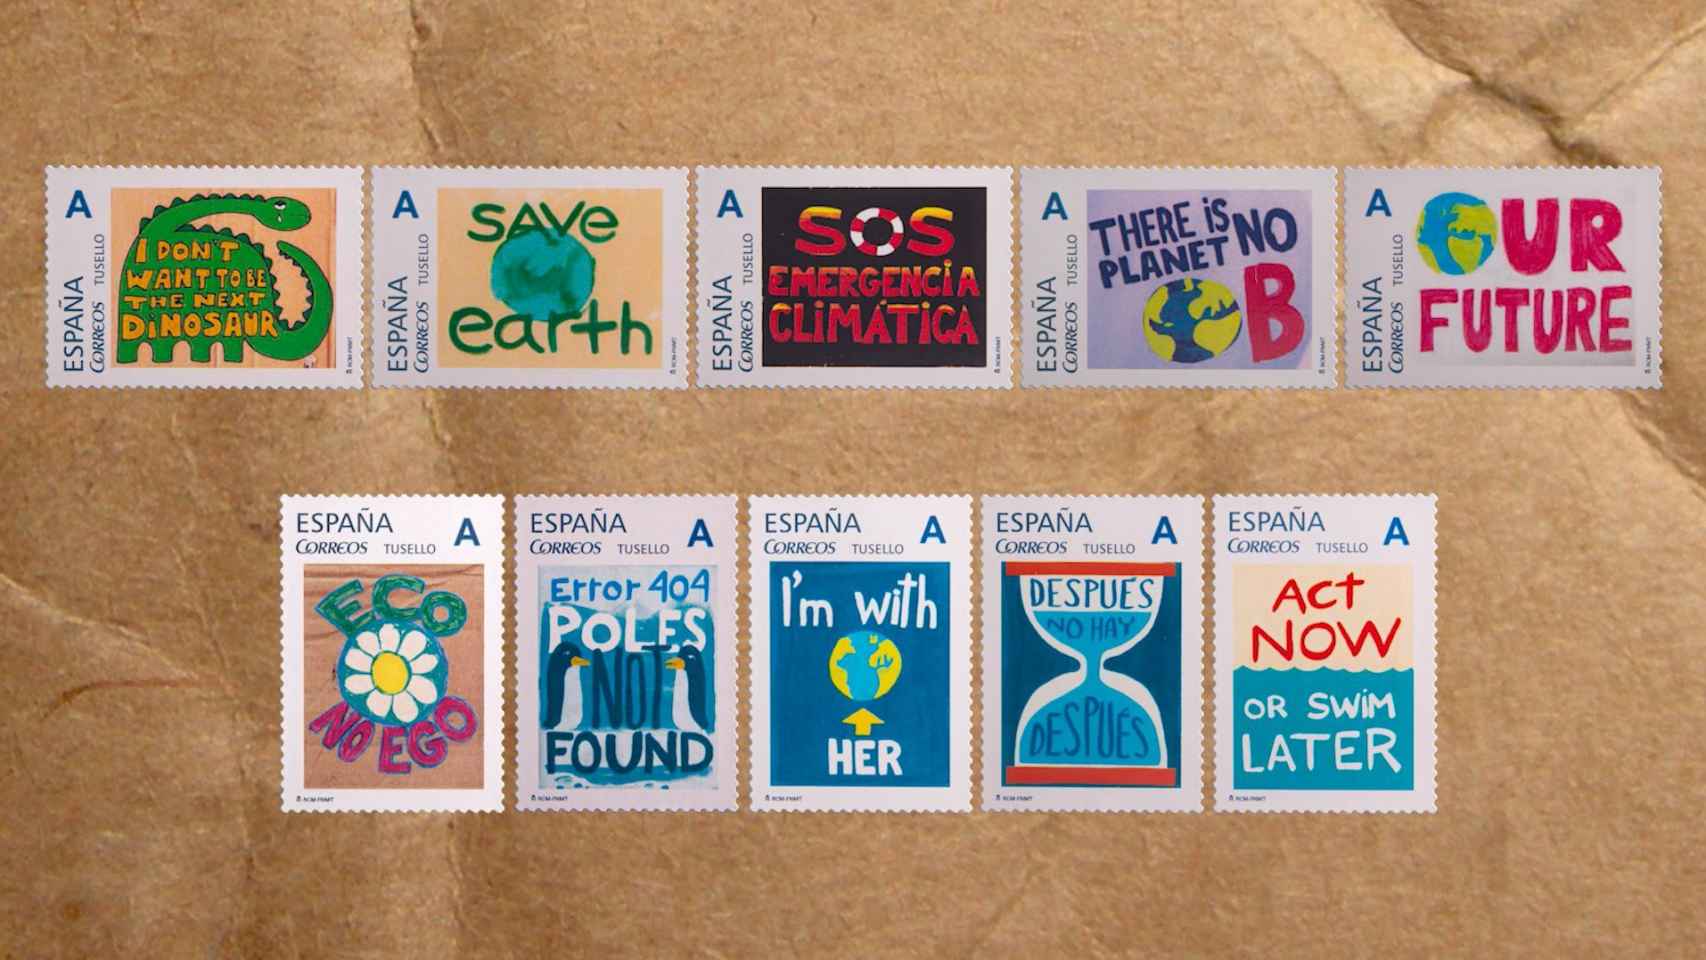 Imagen de los diez diseños de la colección de sellos de Correos en favor del clima.